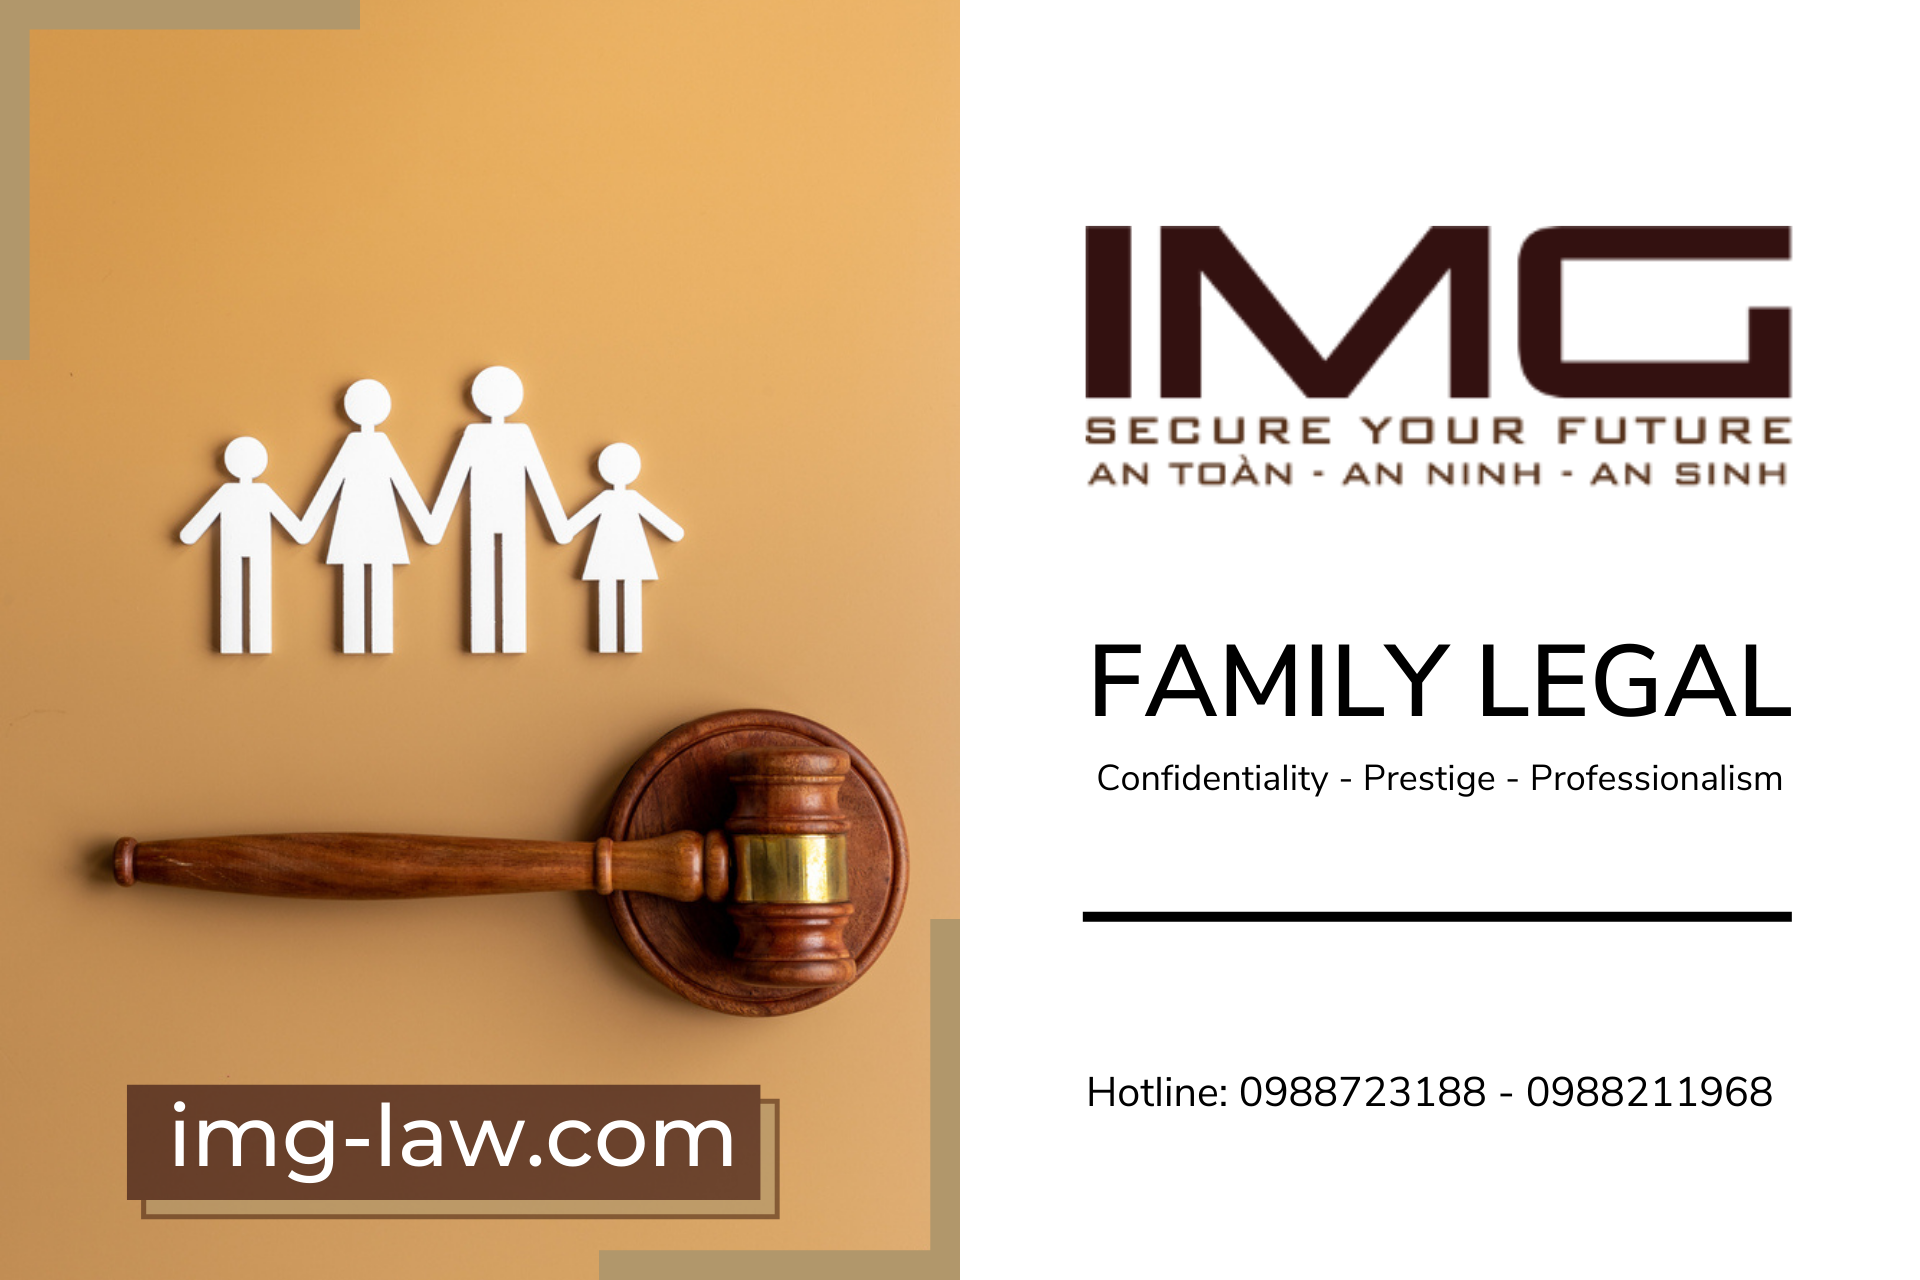 11family legal